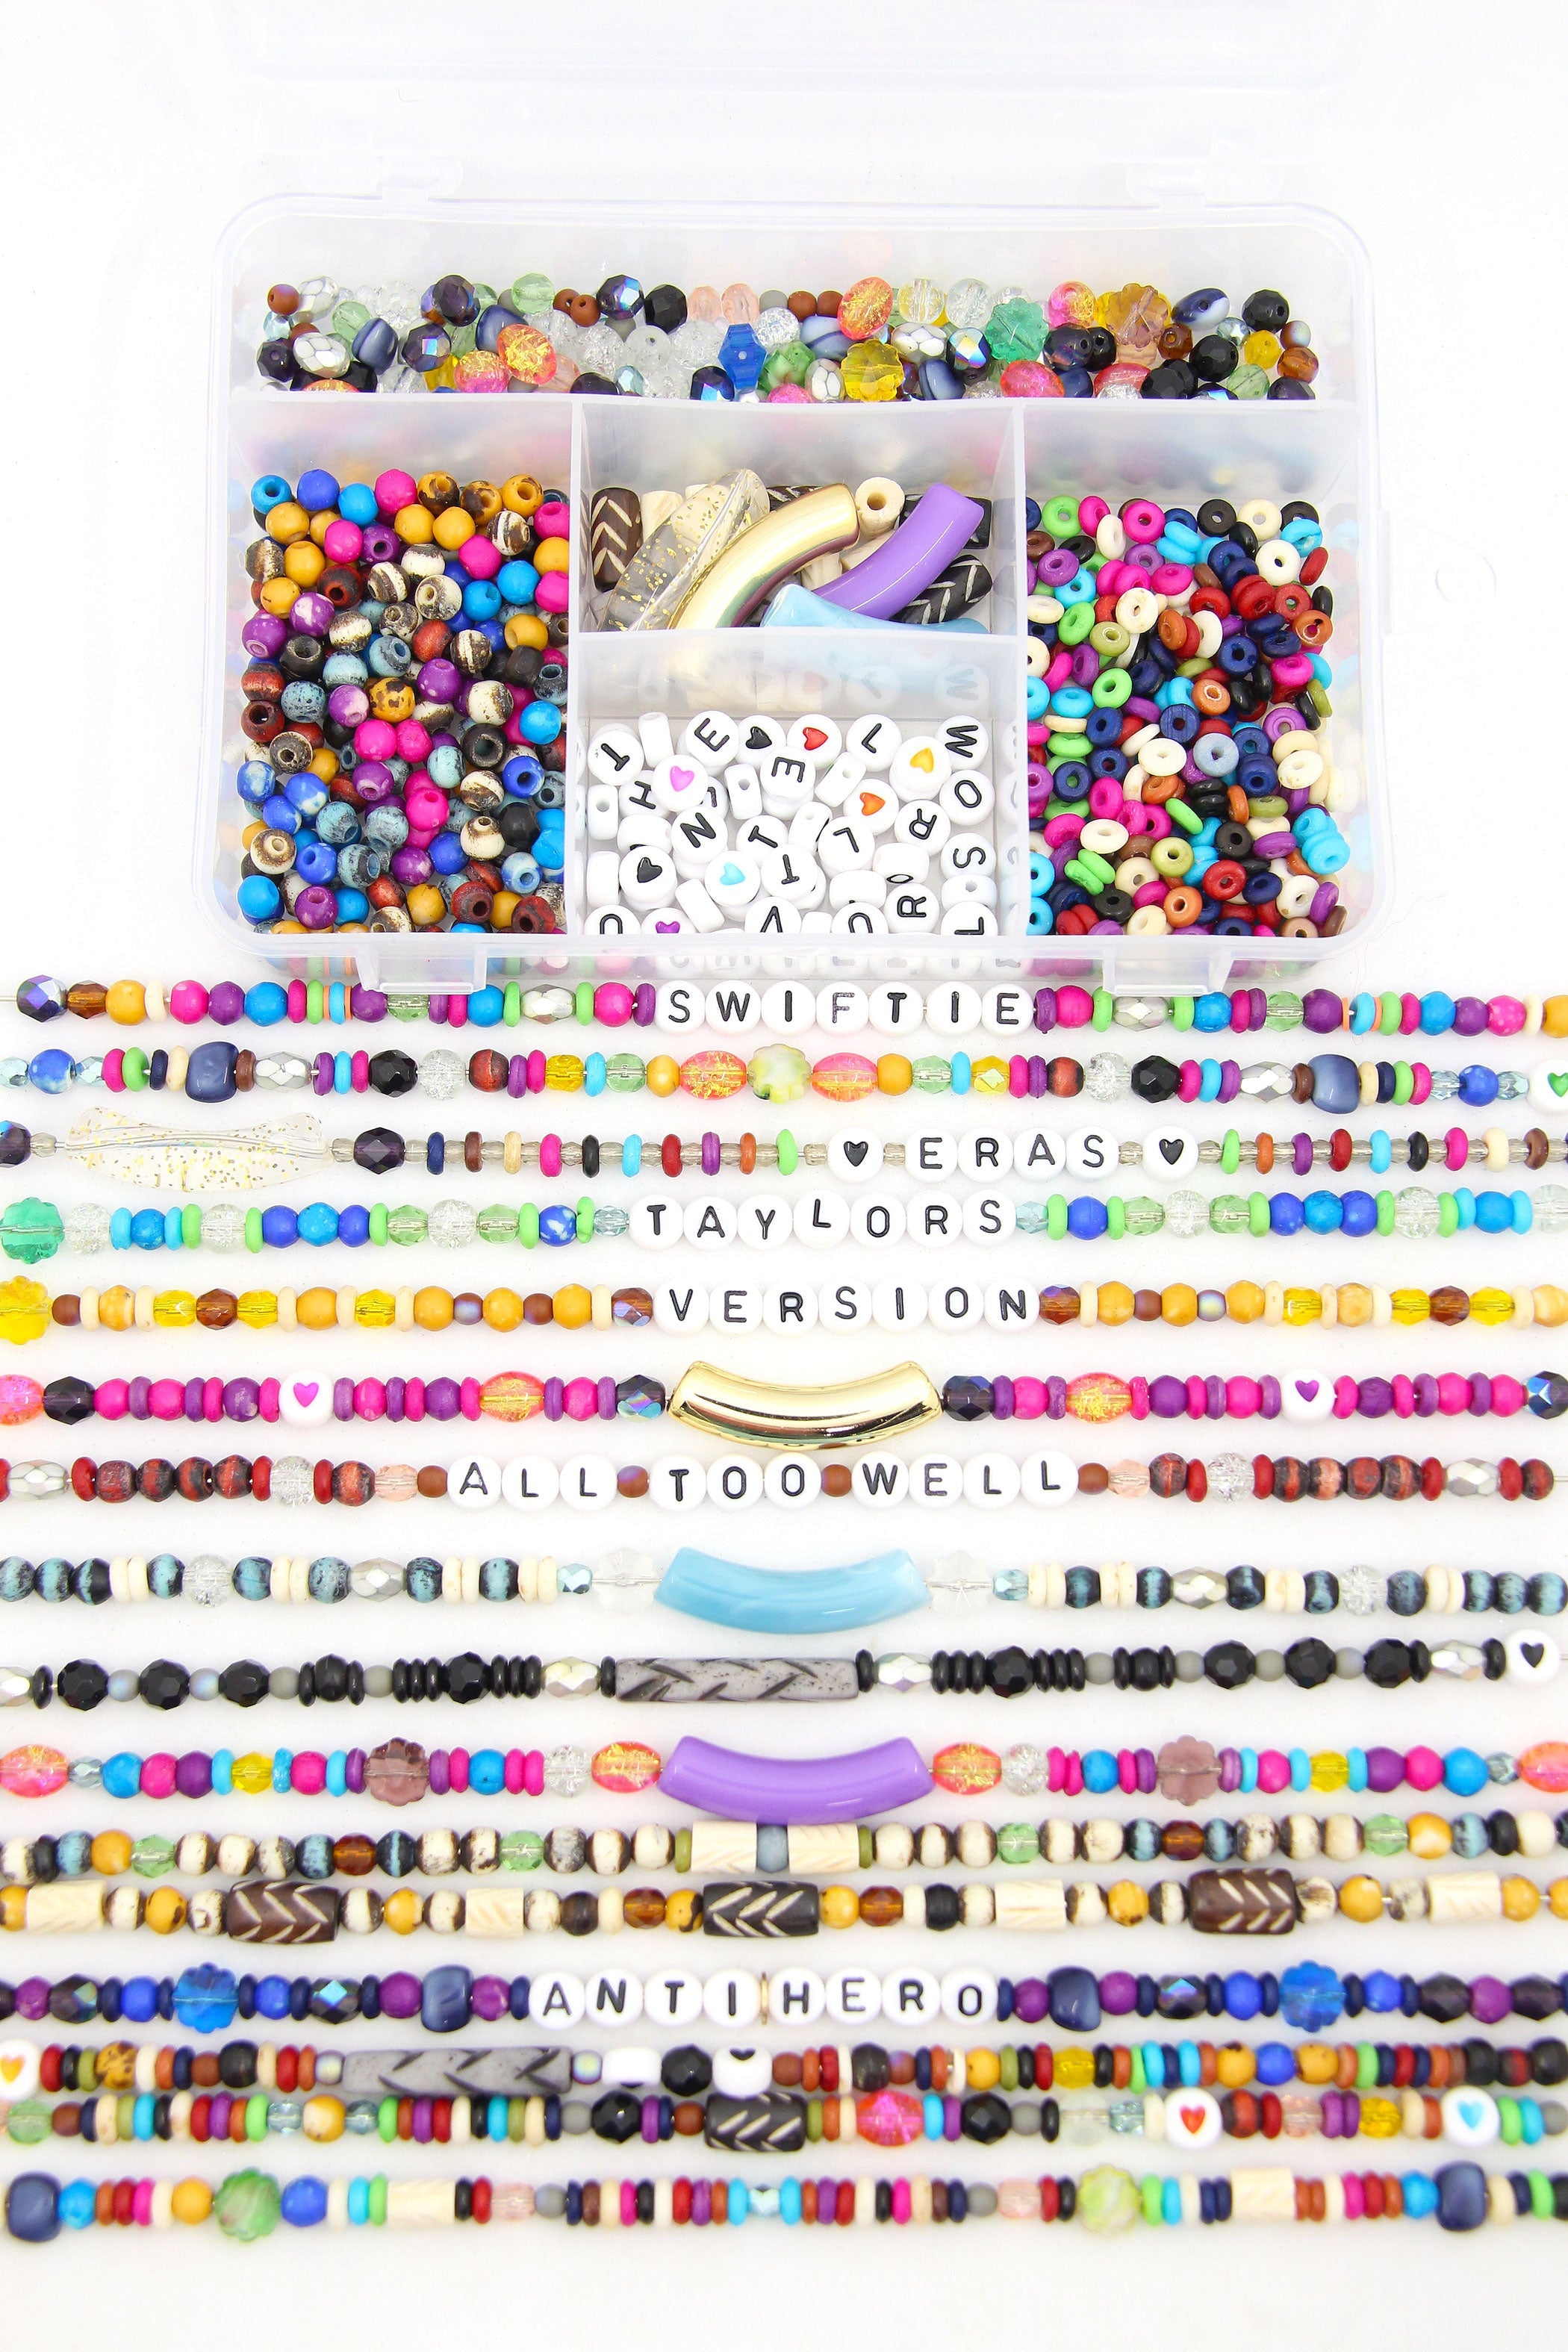 Transparent Color Glass Beads Bracelet Making Kit, Girls' Lovely